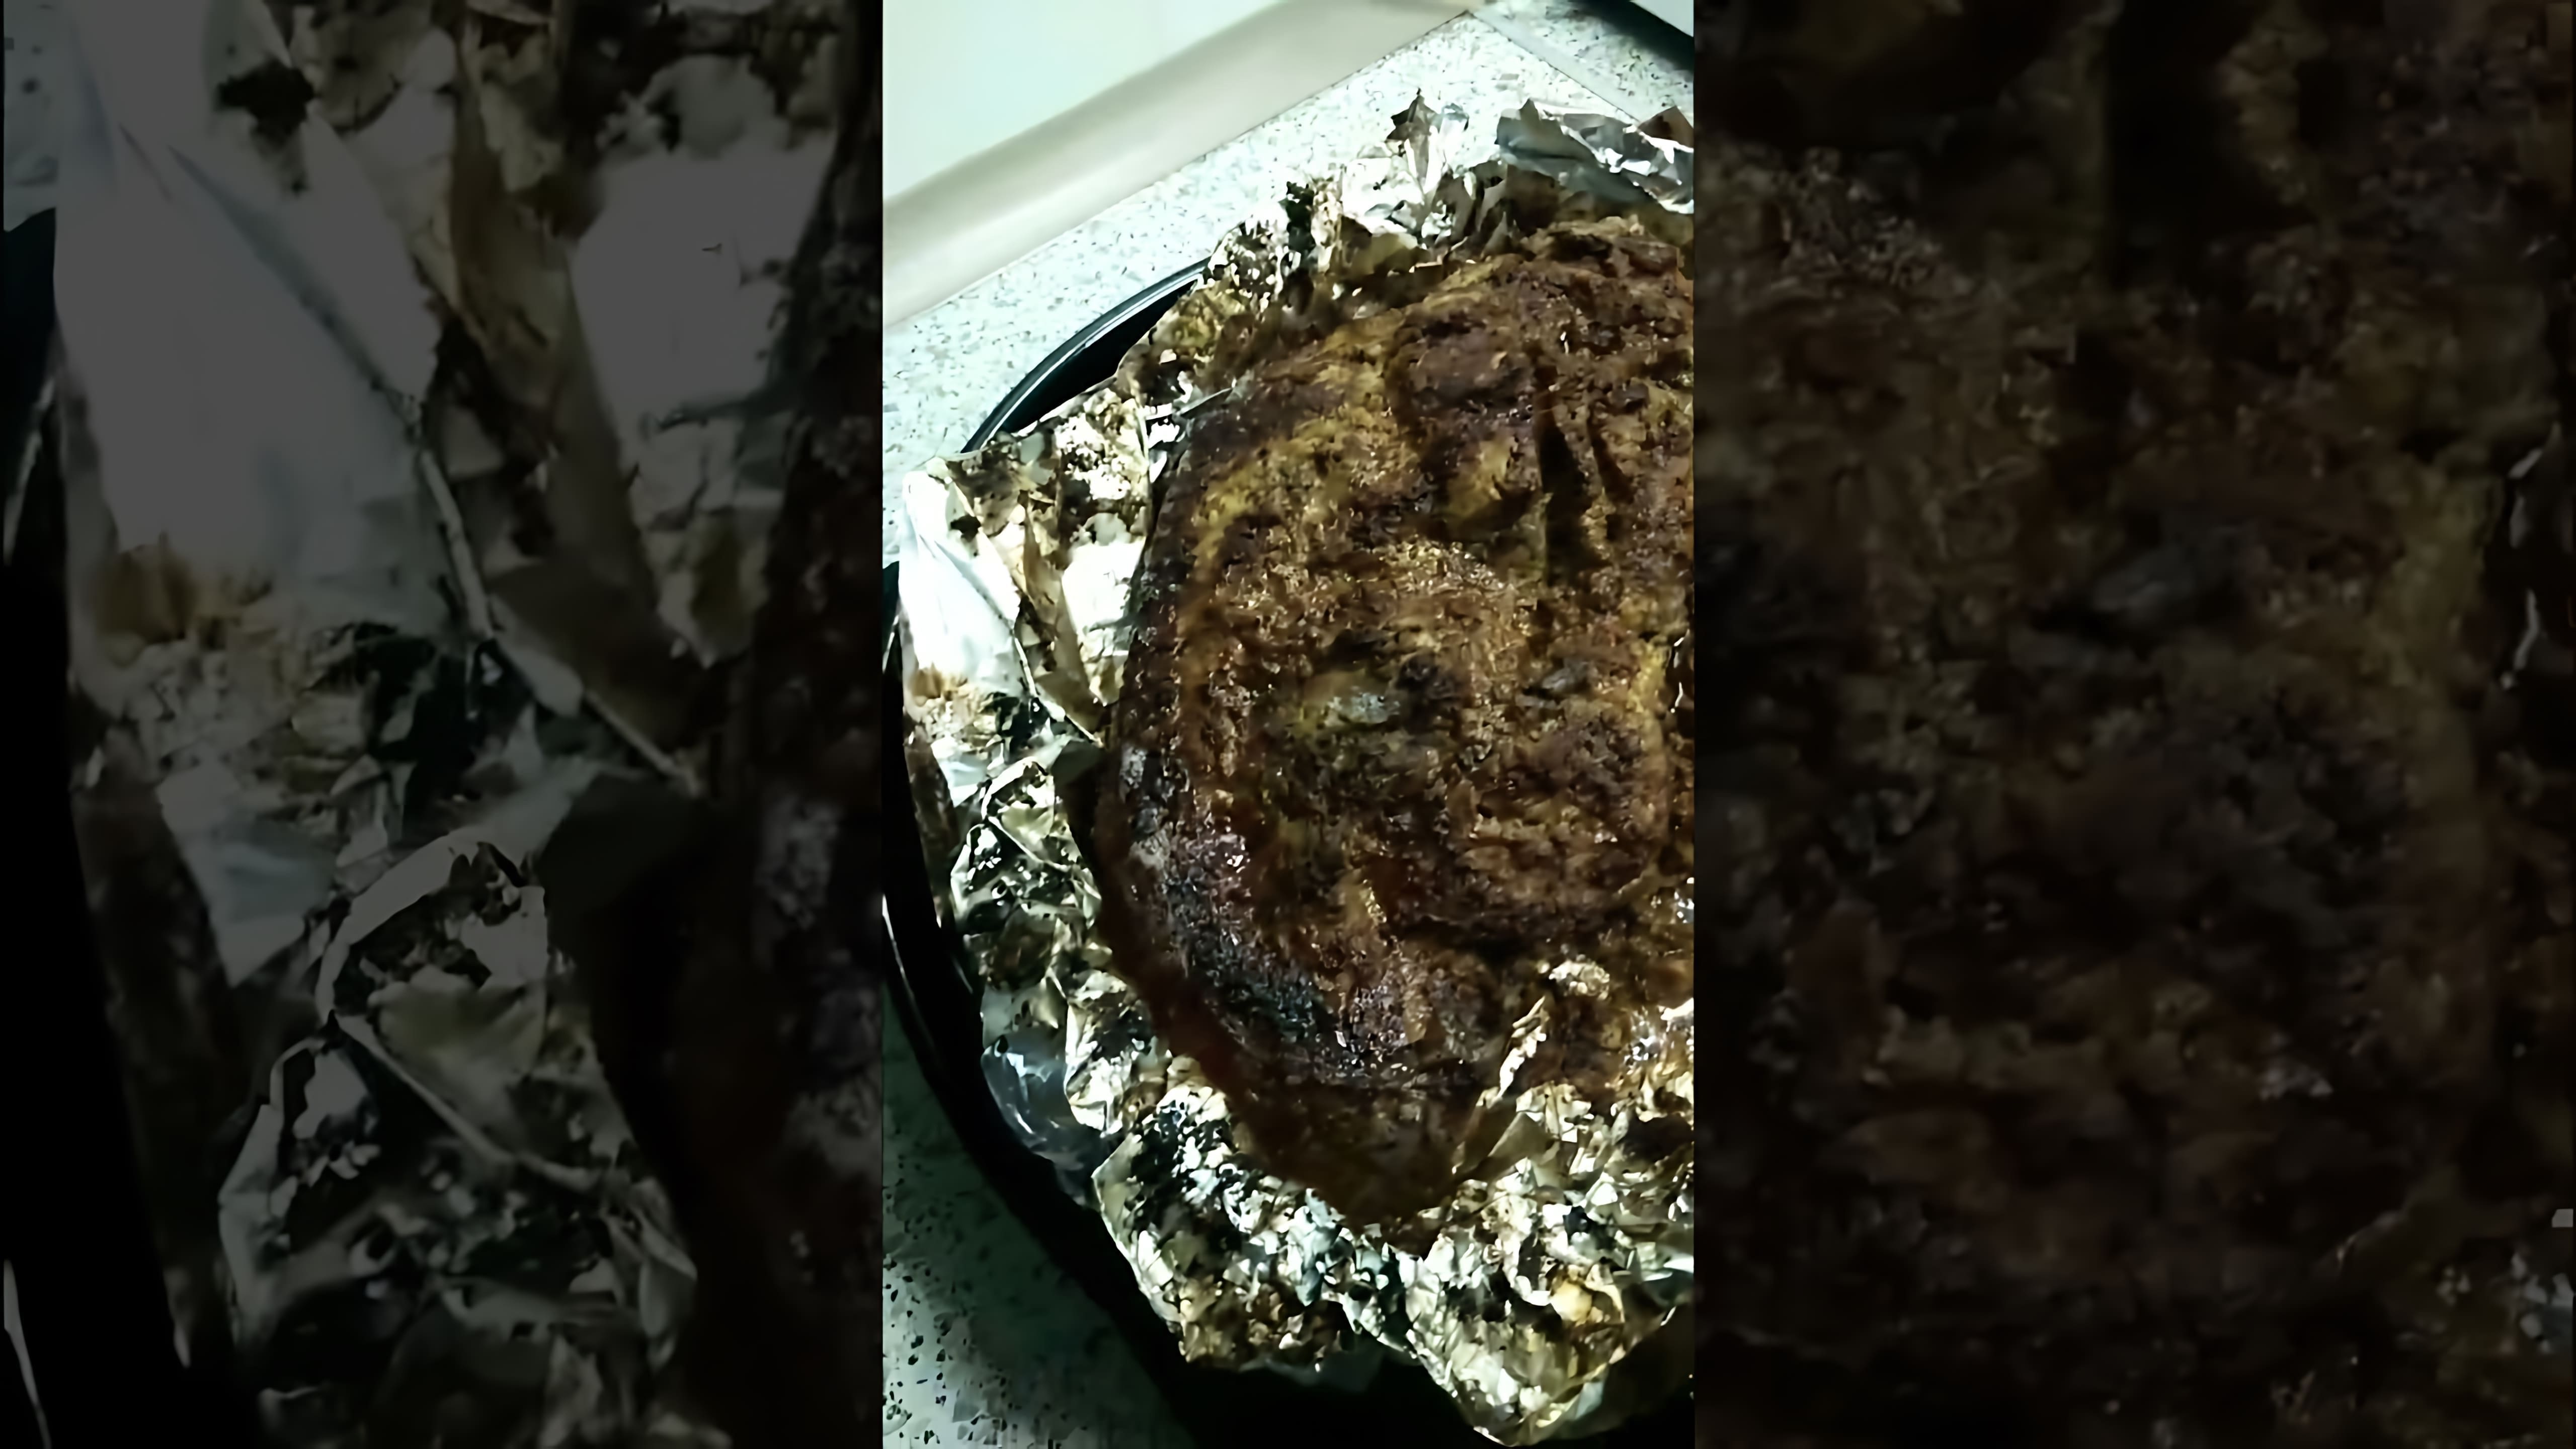 "Окорок только из духовки" - это видео-ролик, который демонстрирует процесс приготовления вкусного и ароматного окорока в духовке